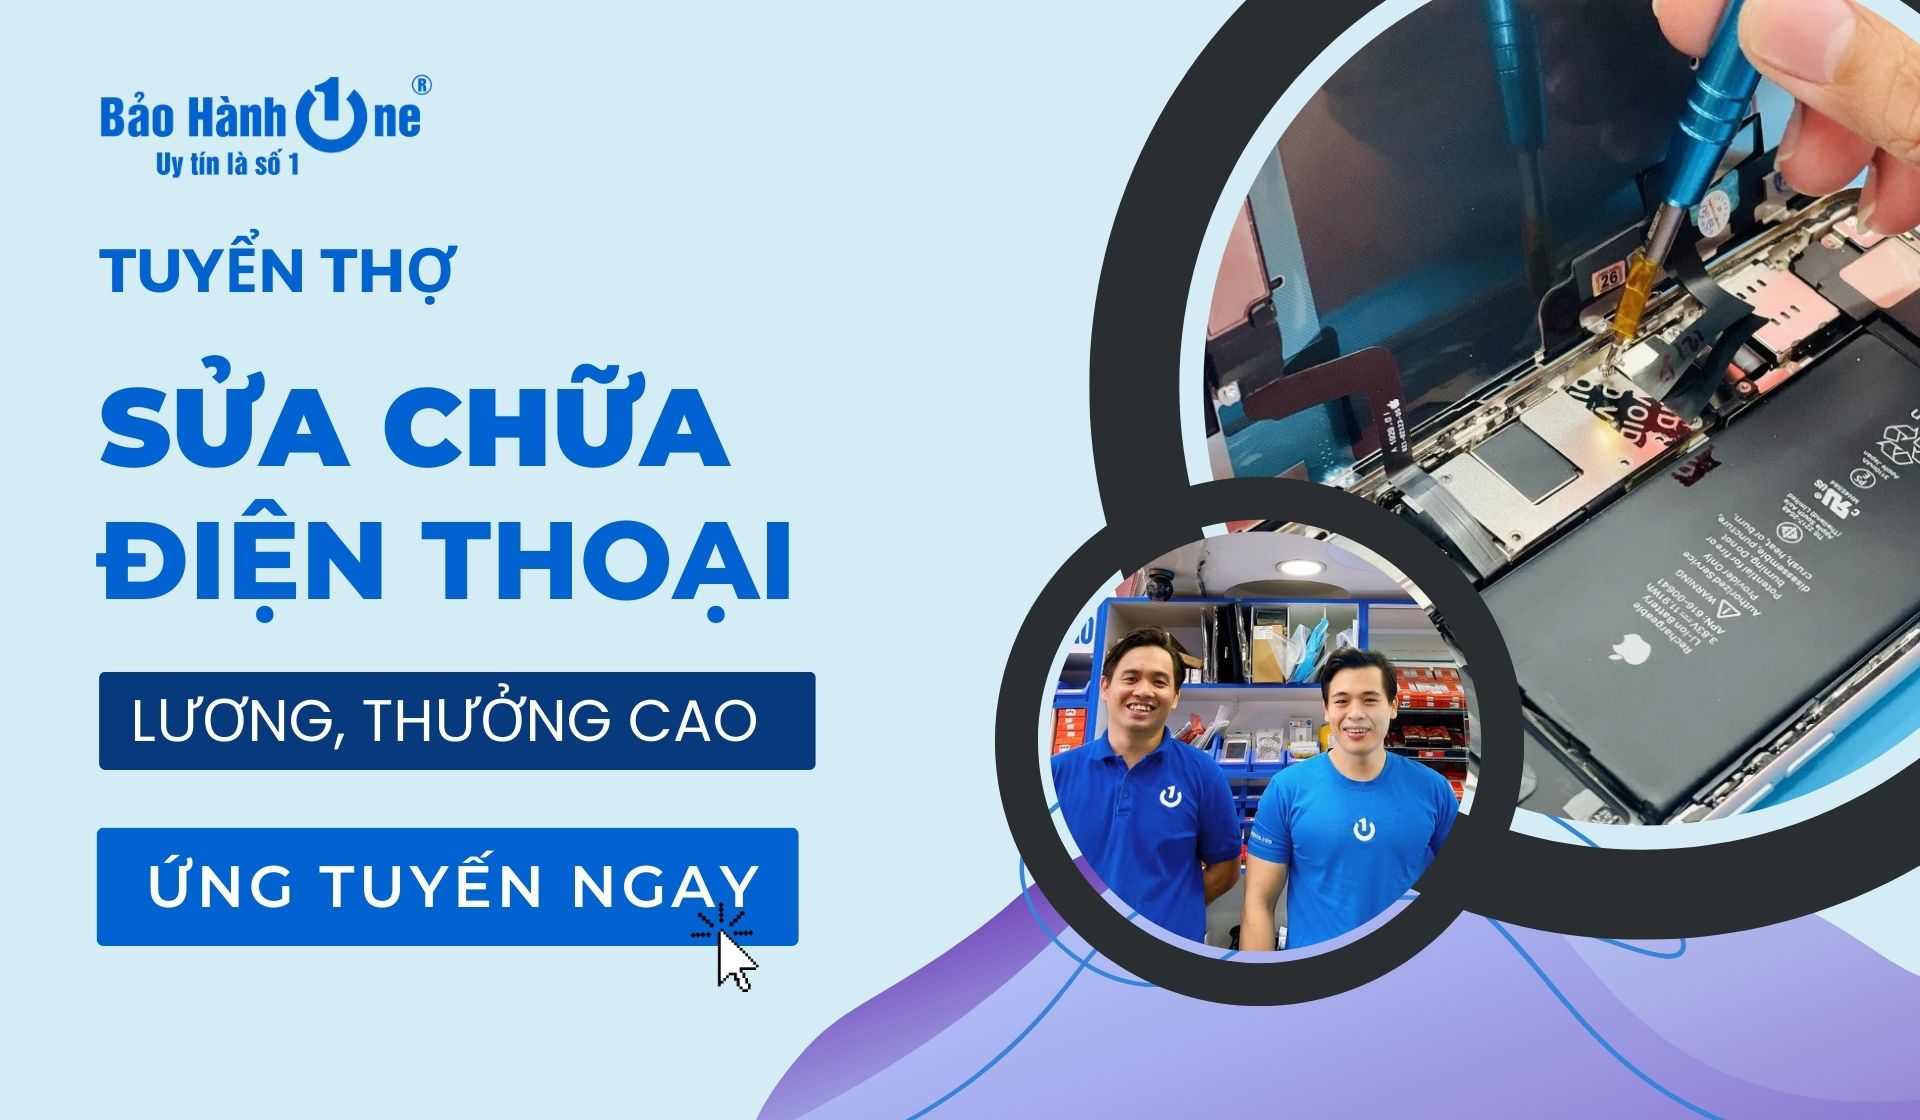 Tuyển dụng Thợ sửa chữa điện thoại lương cao tại Quận 1, Quận 10, Quận Tân Phú